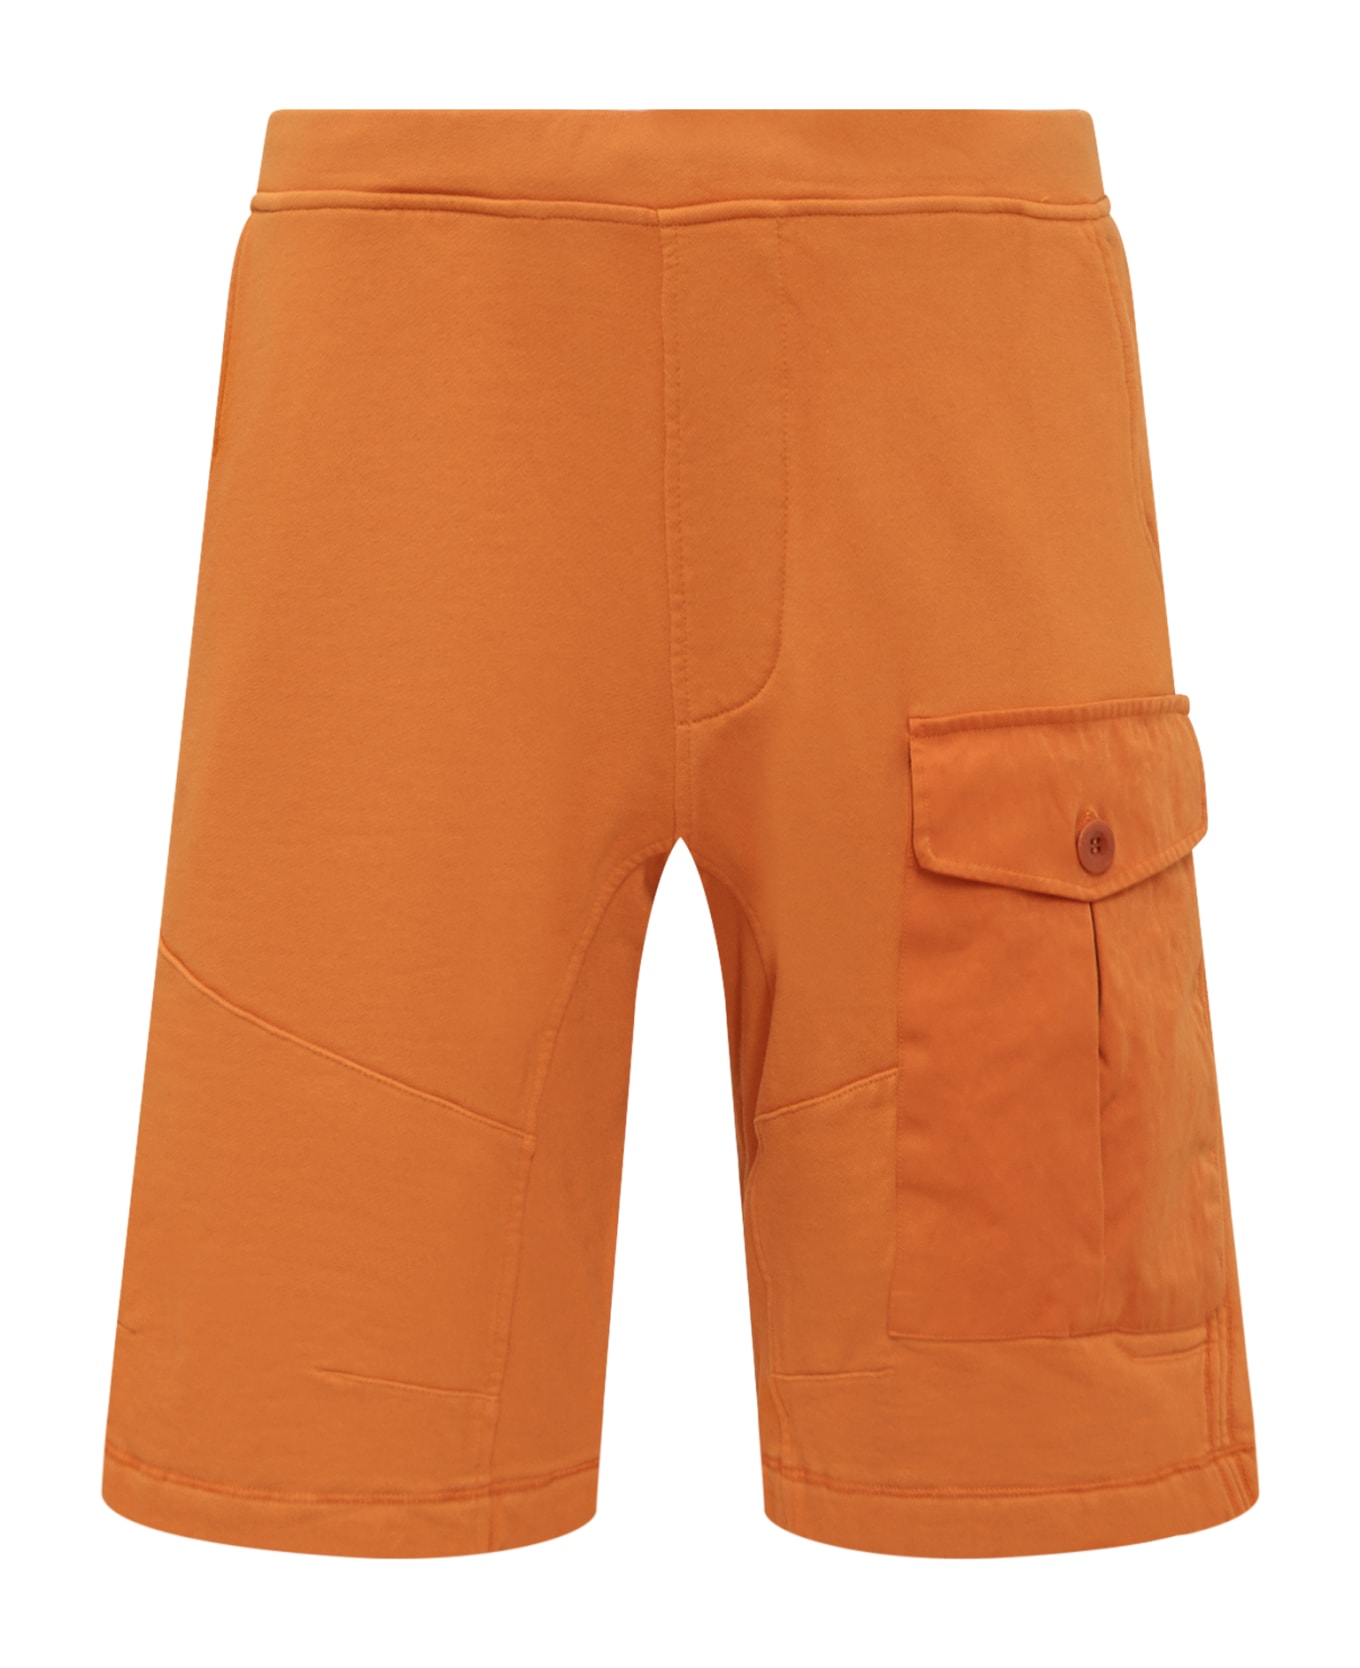 Ten C Fleece Short Pants - ARANCIONE/PESCA